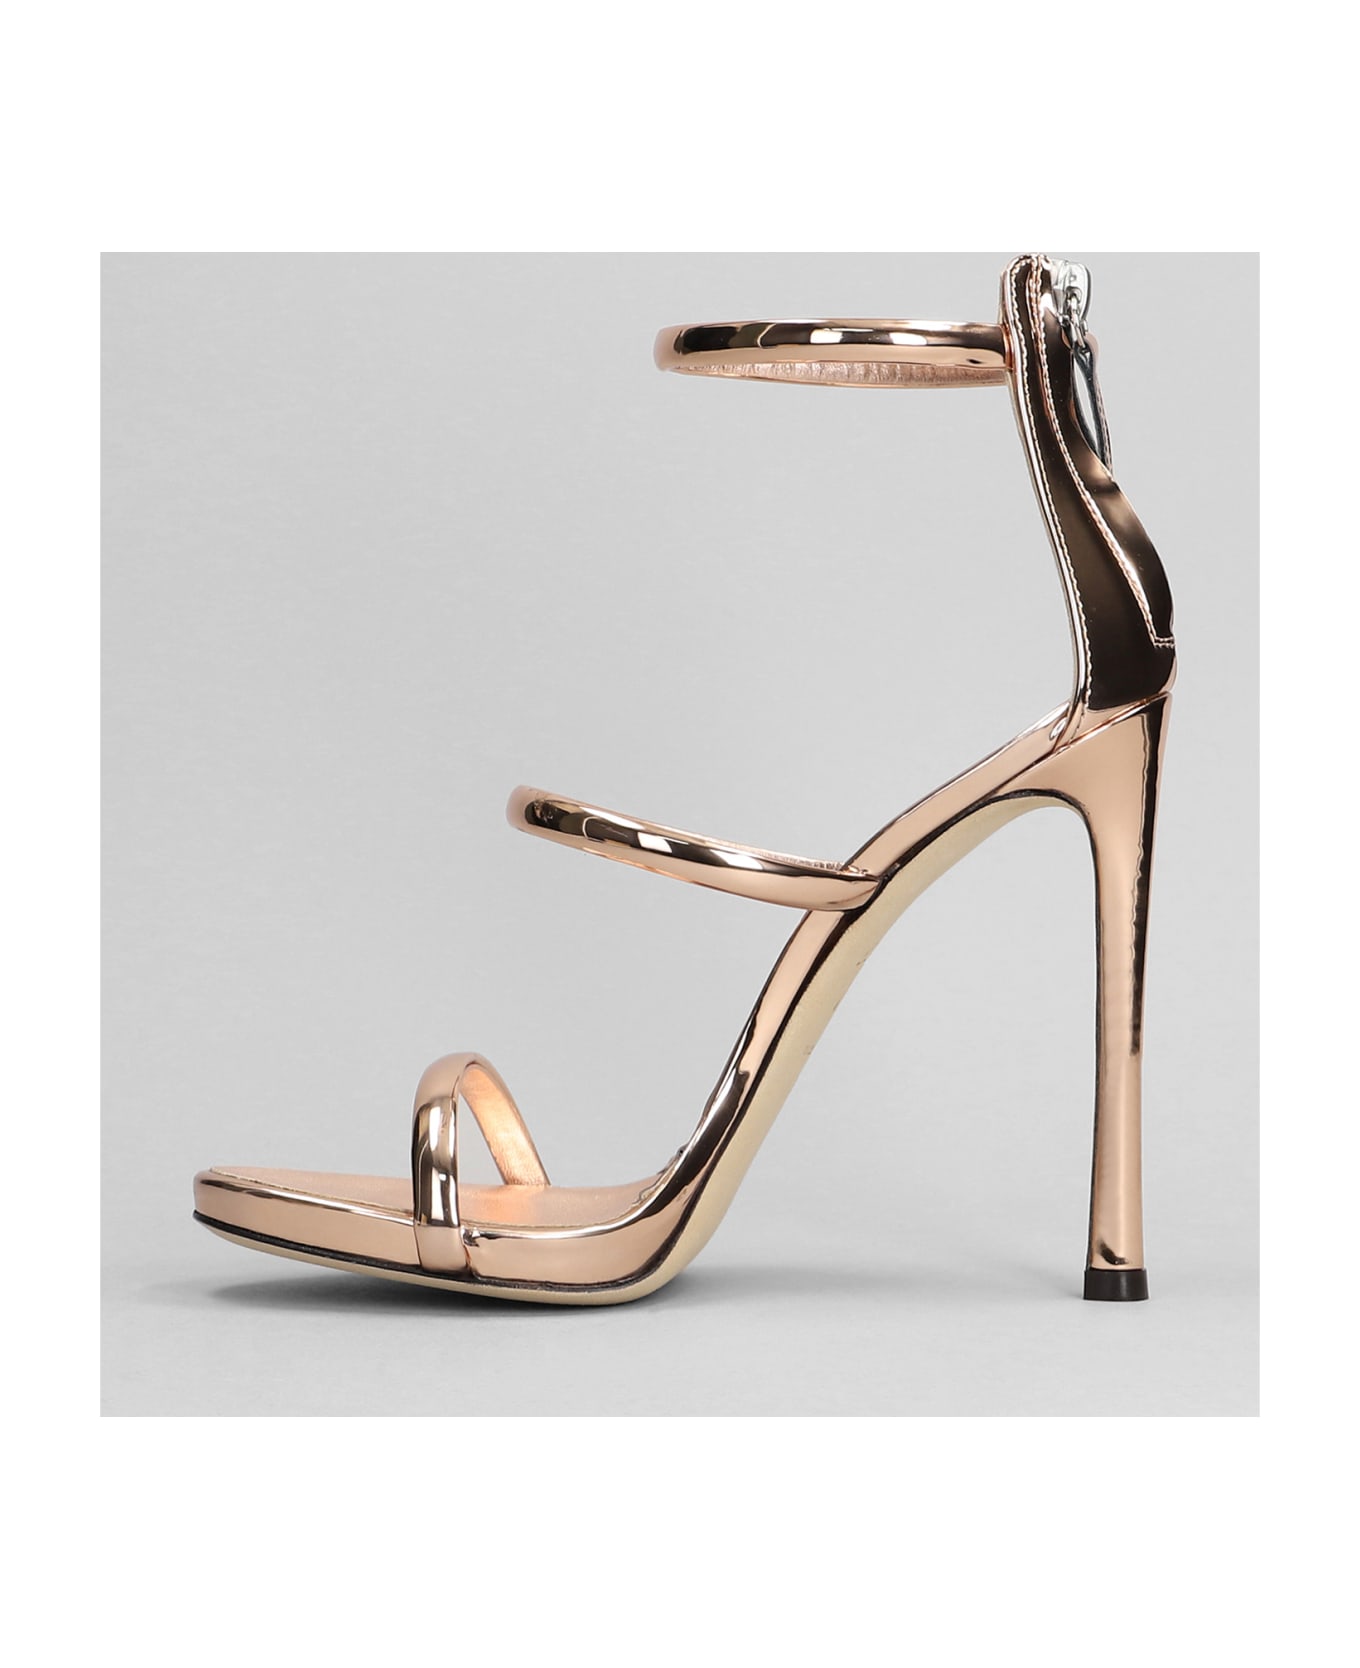 Giuseppe Zanotti Harmony Sandals In Copper Patent Leather - copper